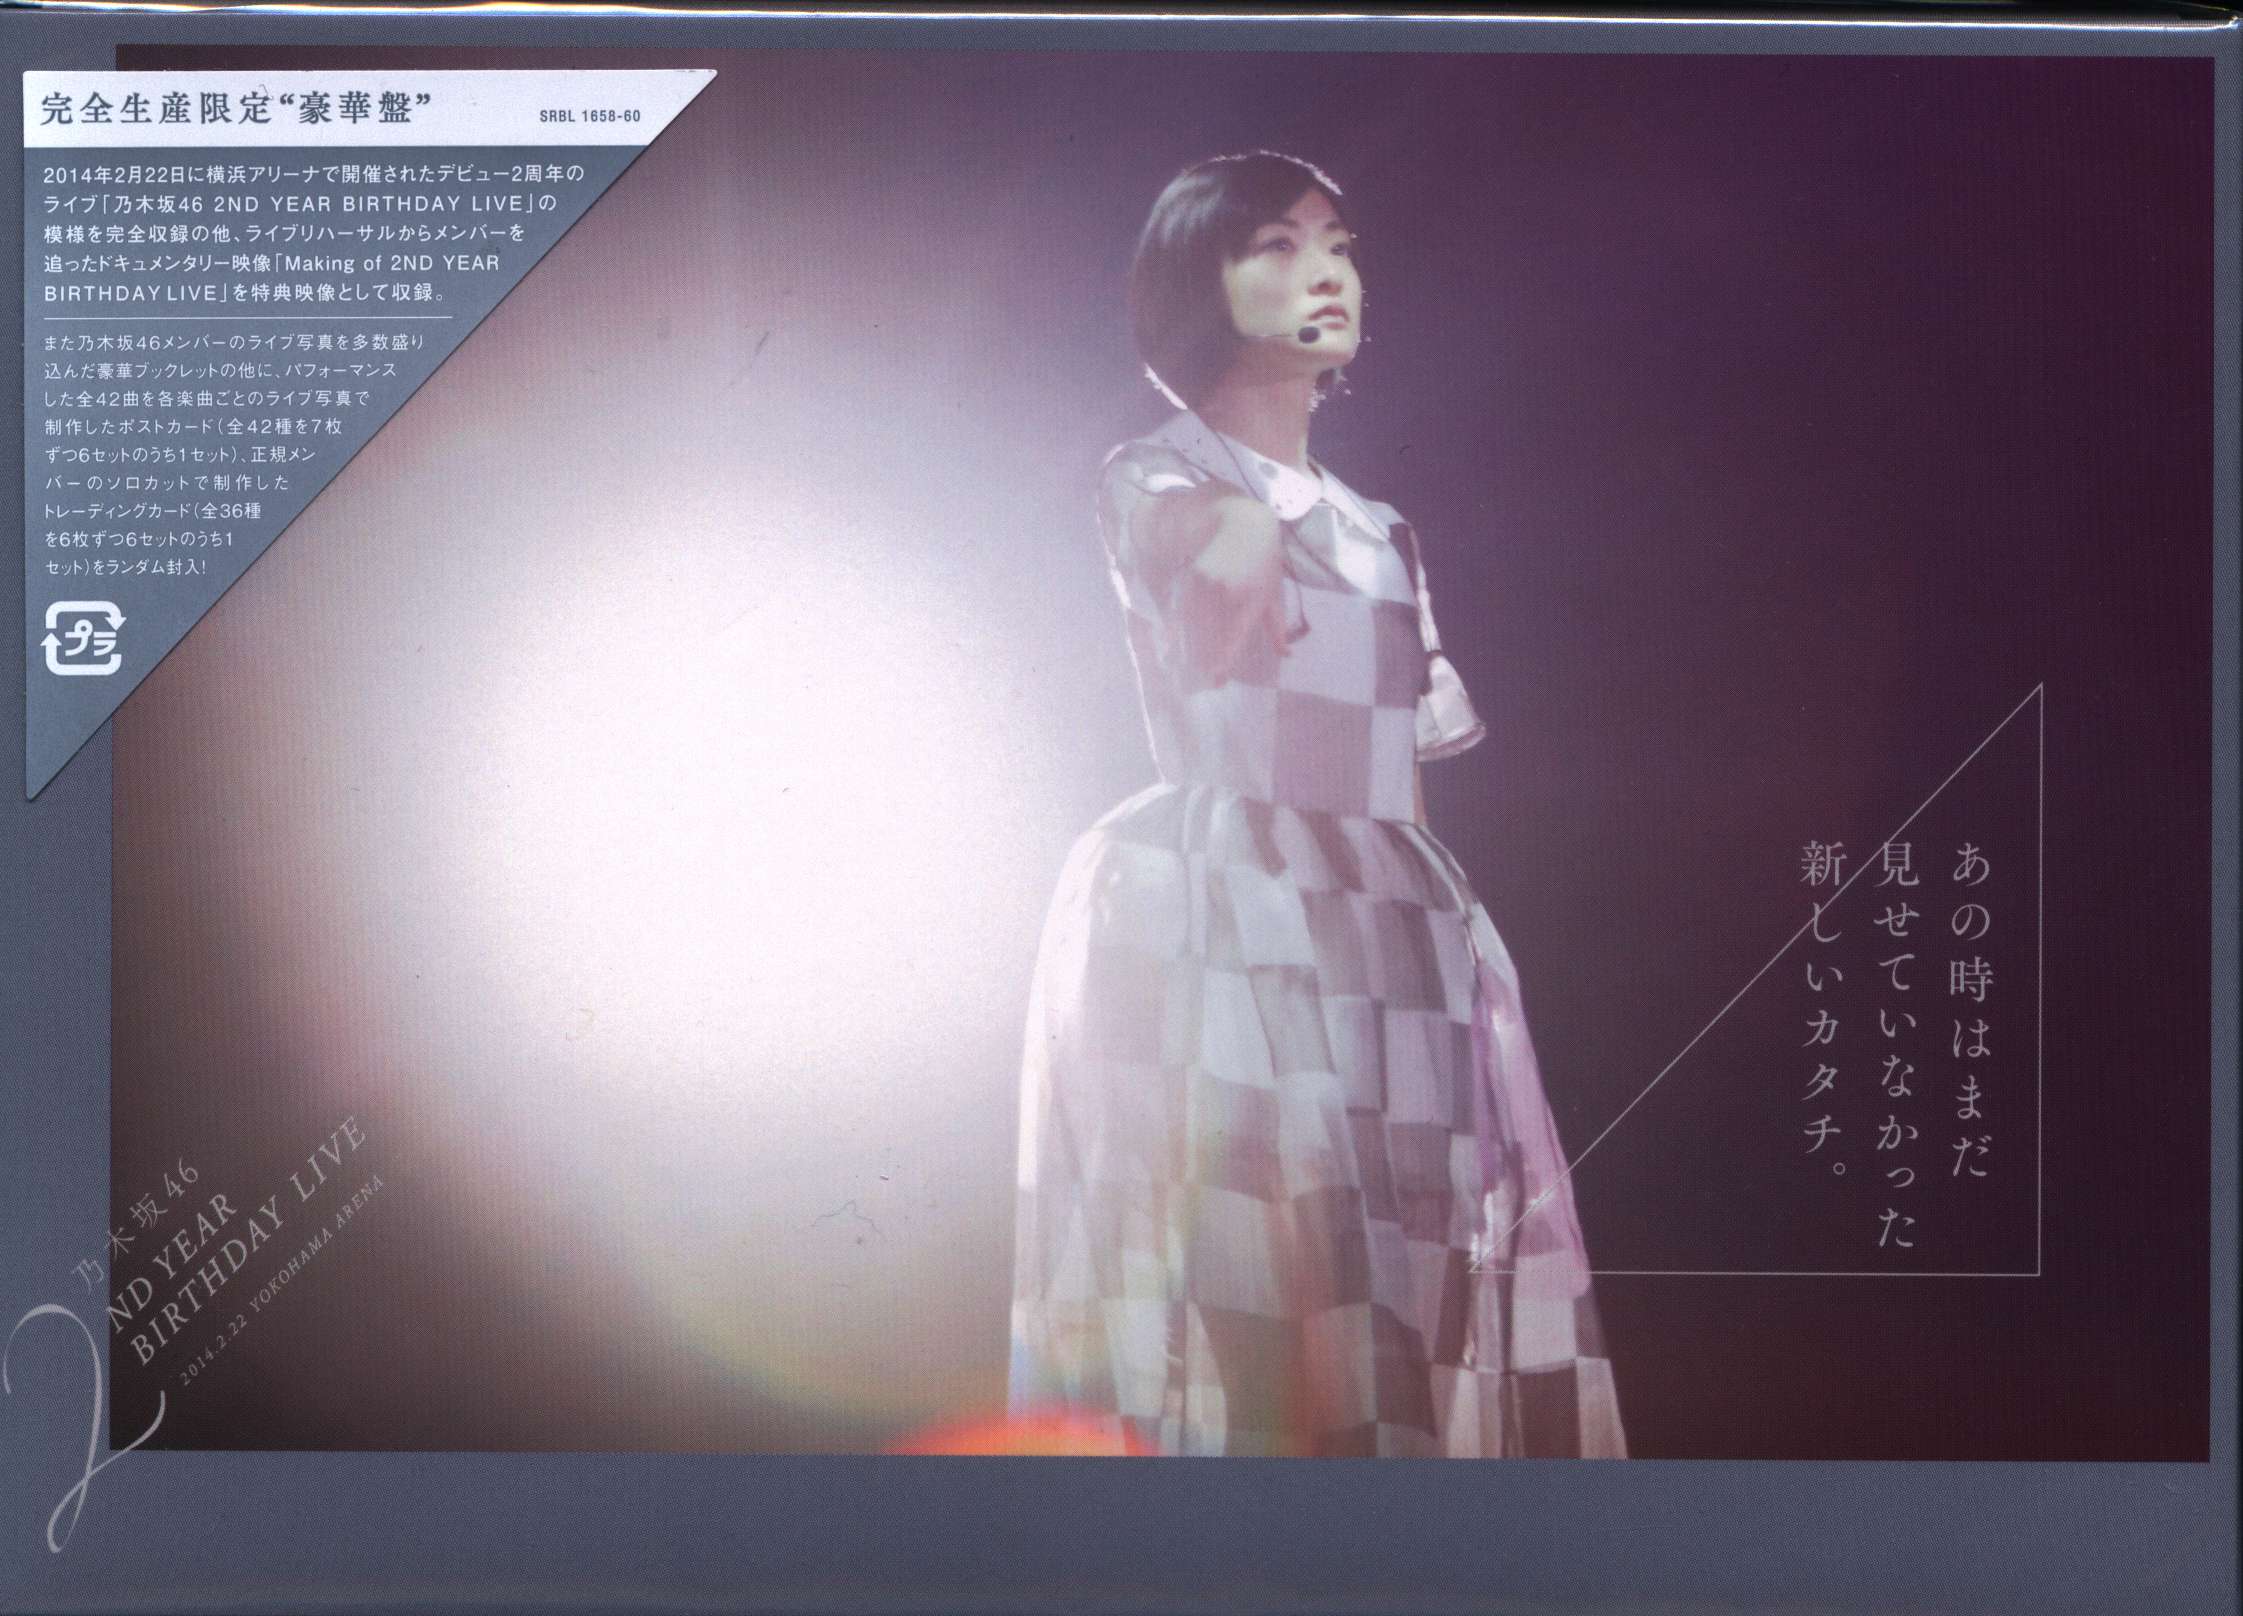 乃木坂46 2ND YEAR BIRTHDAY LIVE 2014.2.22 YOKOHAMA ARENA DVD豪華盤 まんだらけ  Mandarake